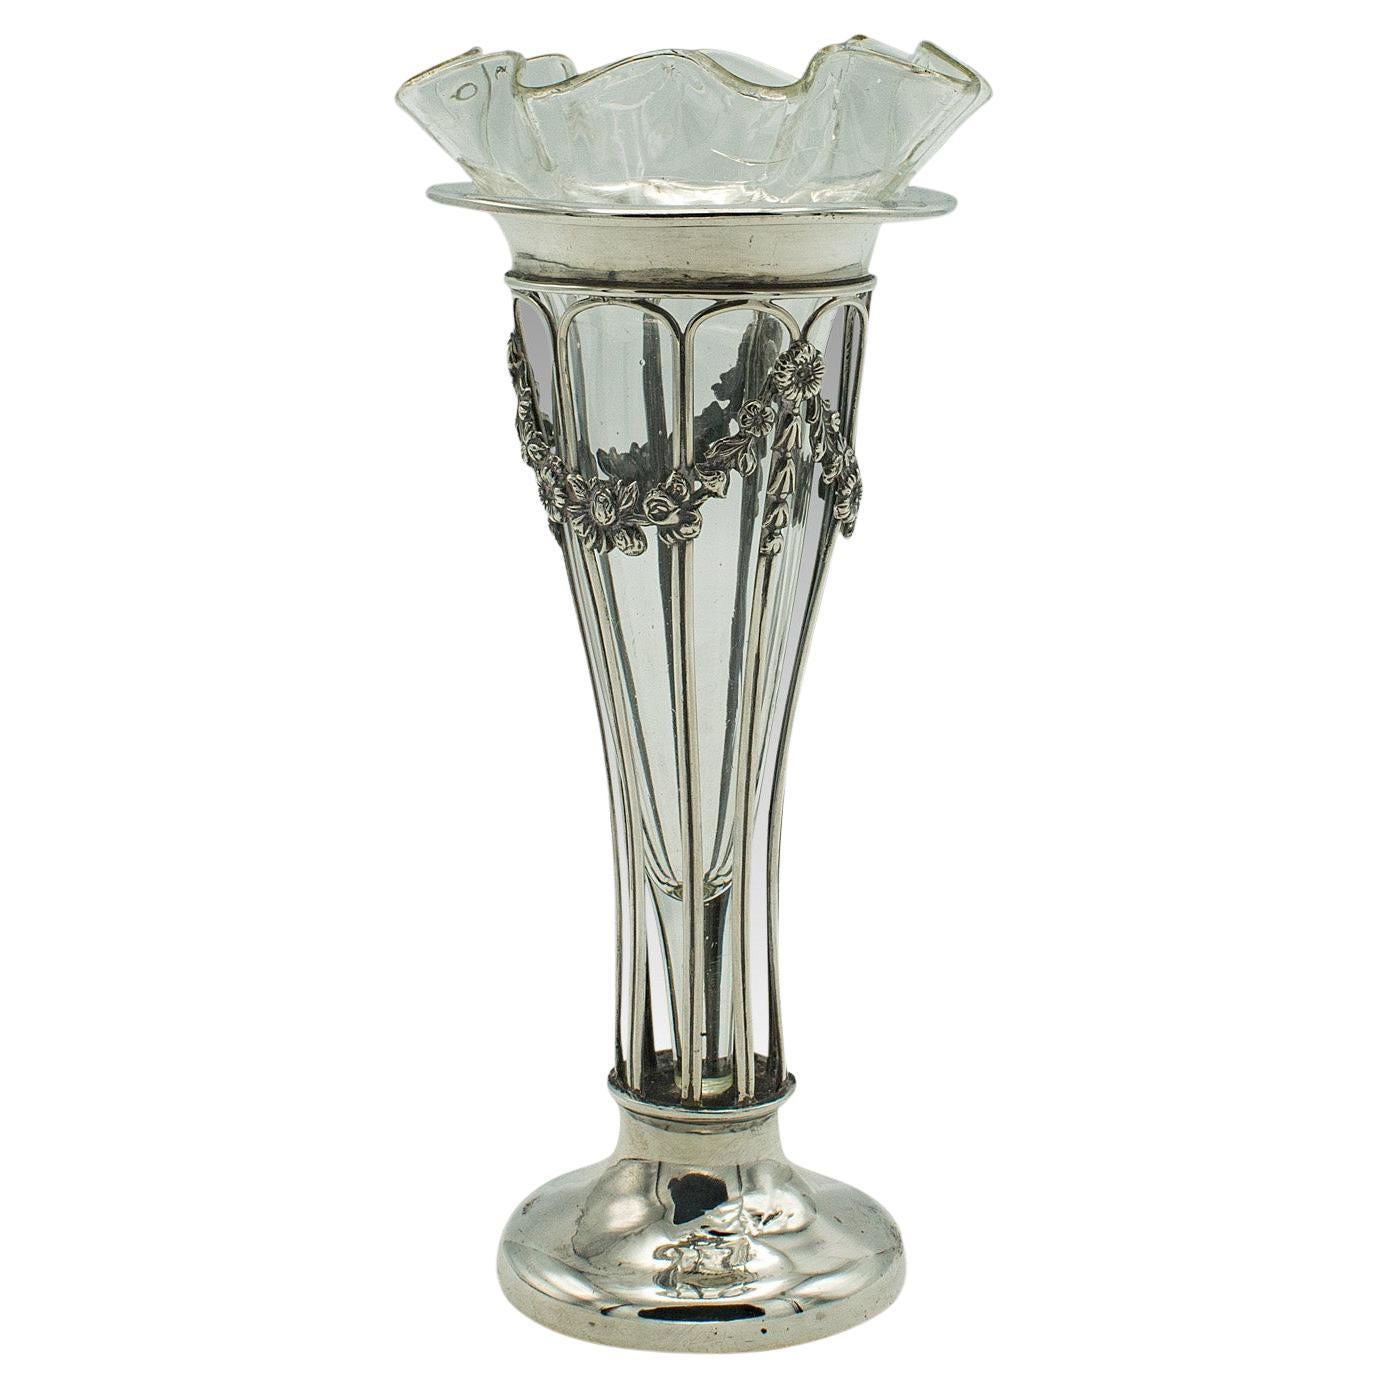 Small Antique Stem Vase, English, Silver, Glass, Decor, Art Nouveau, Edwardian